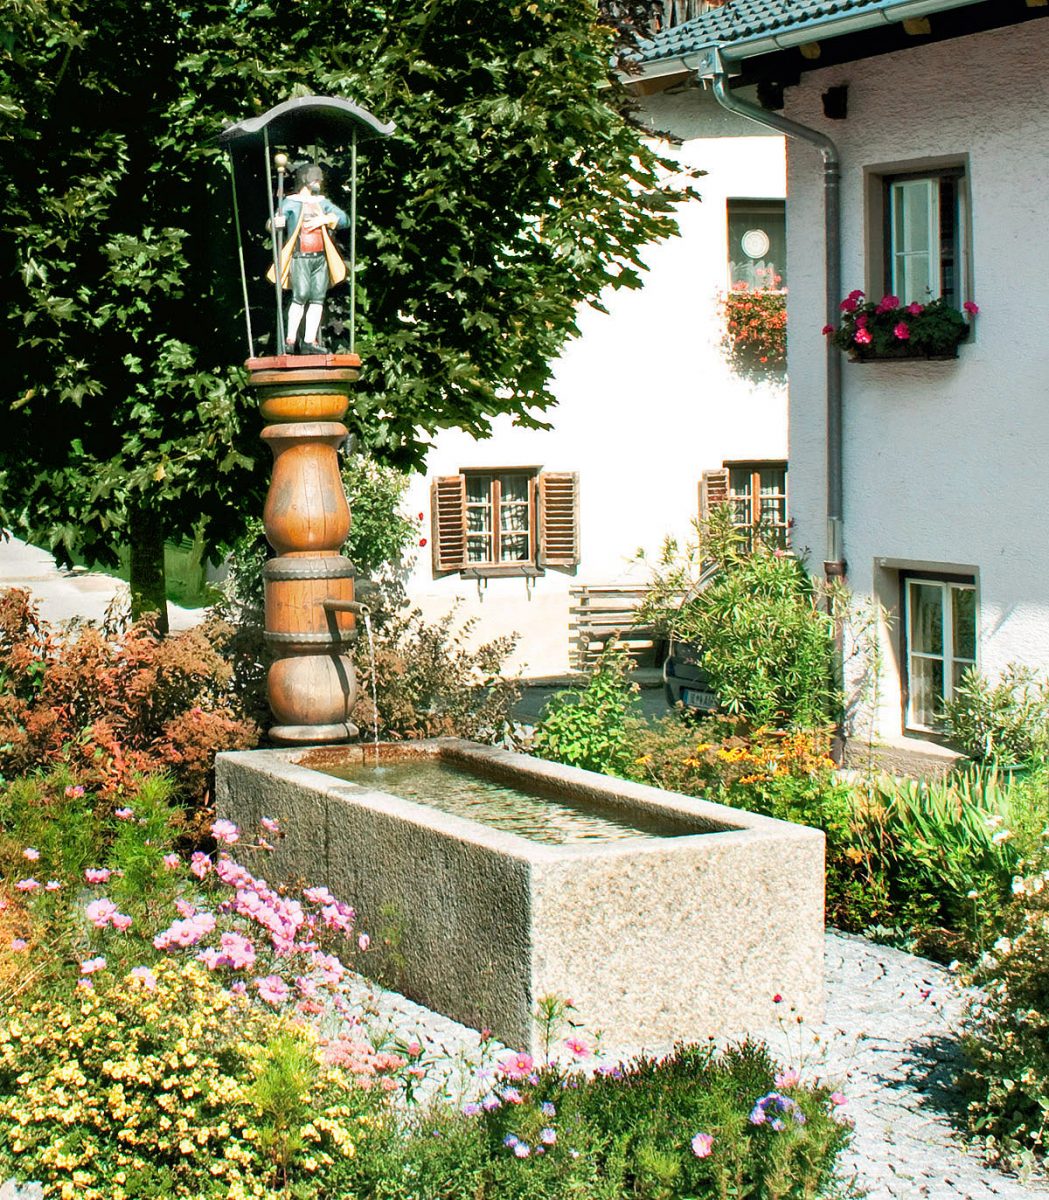 The "Dorfbrunnen" in Flaurling © TVB Innsbruck / Baumann